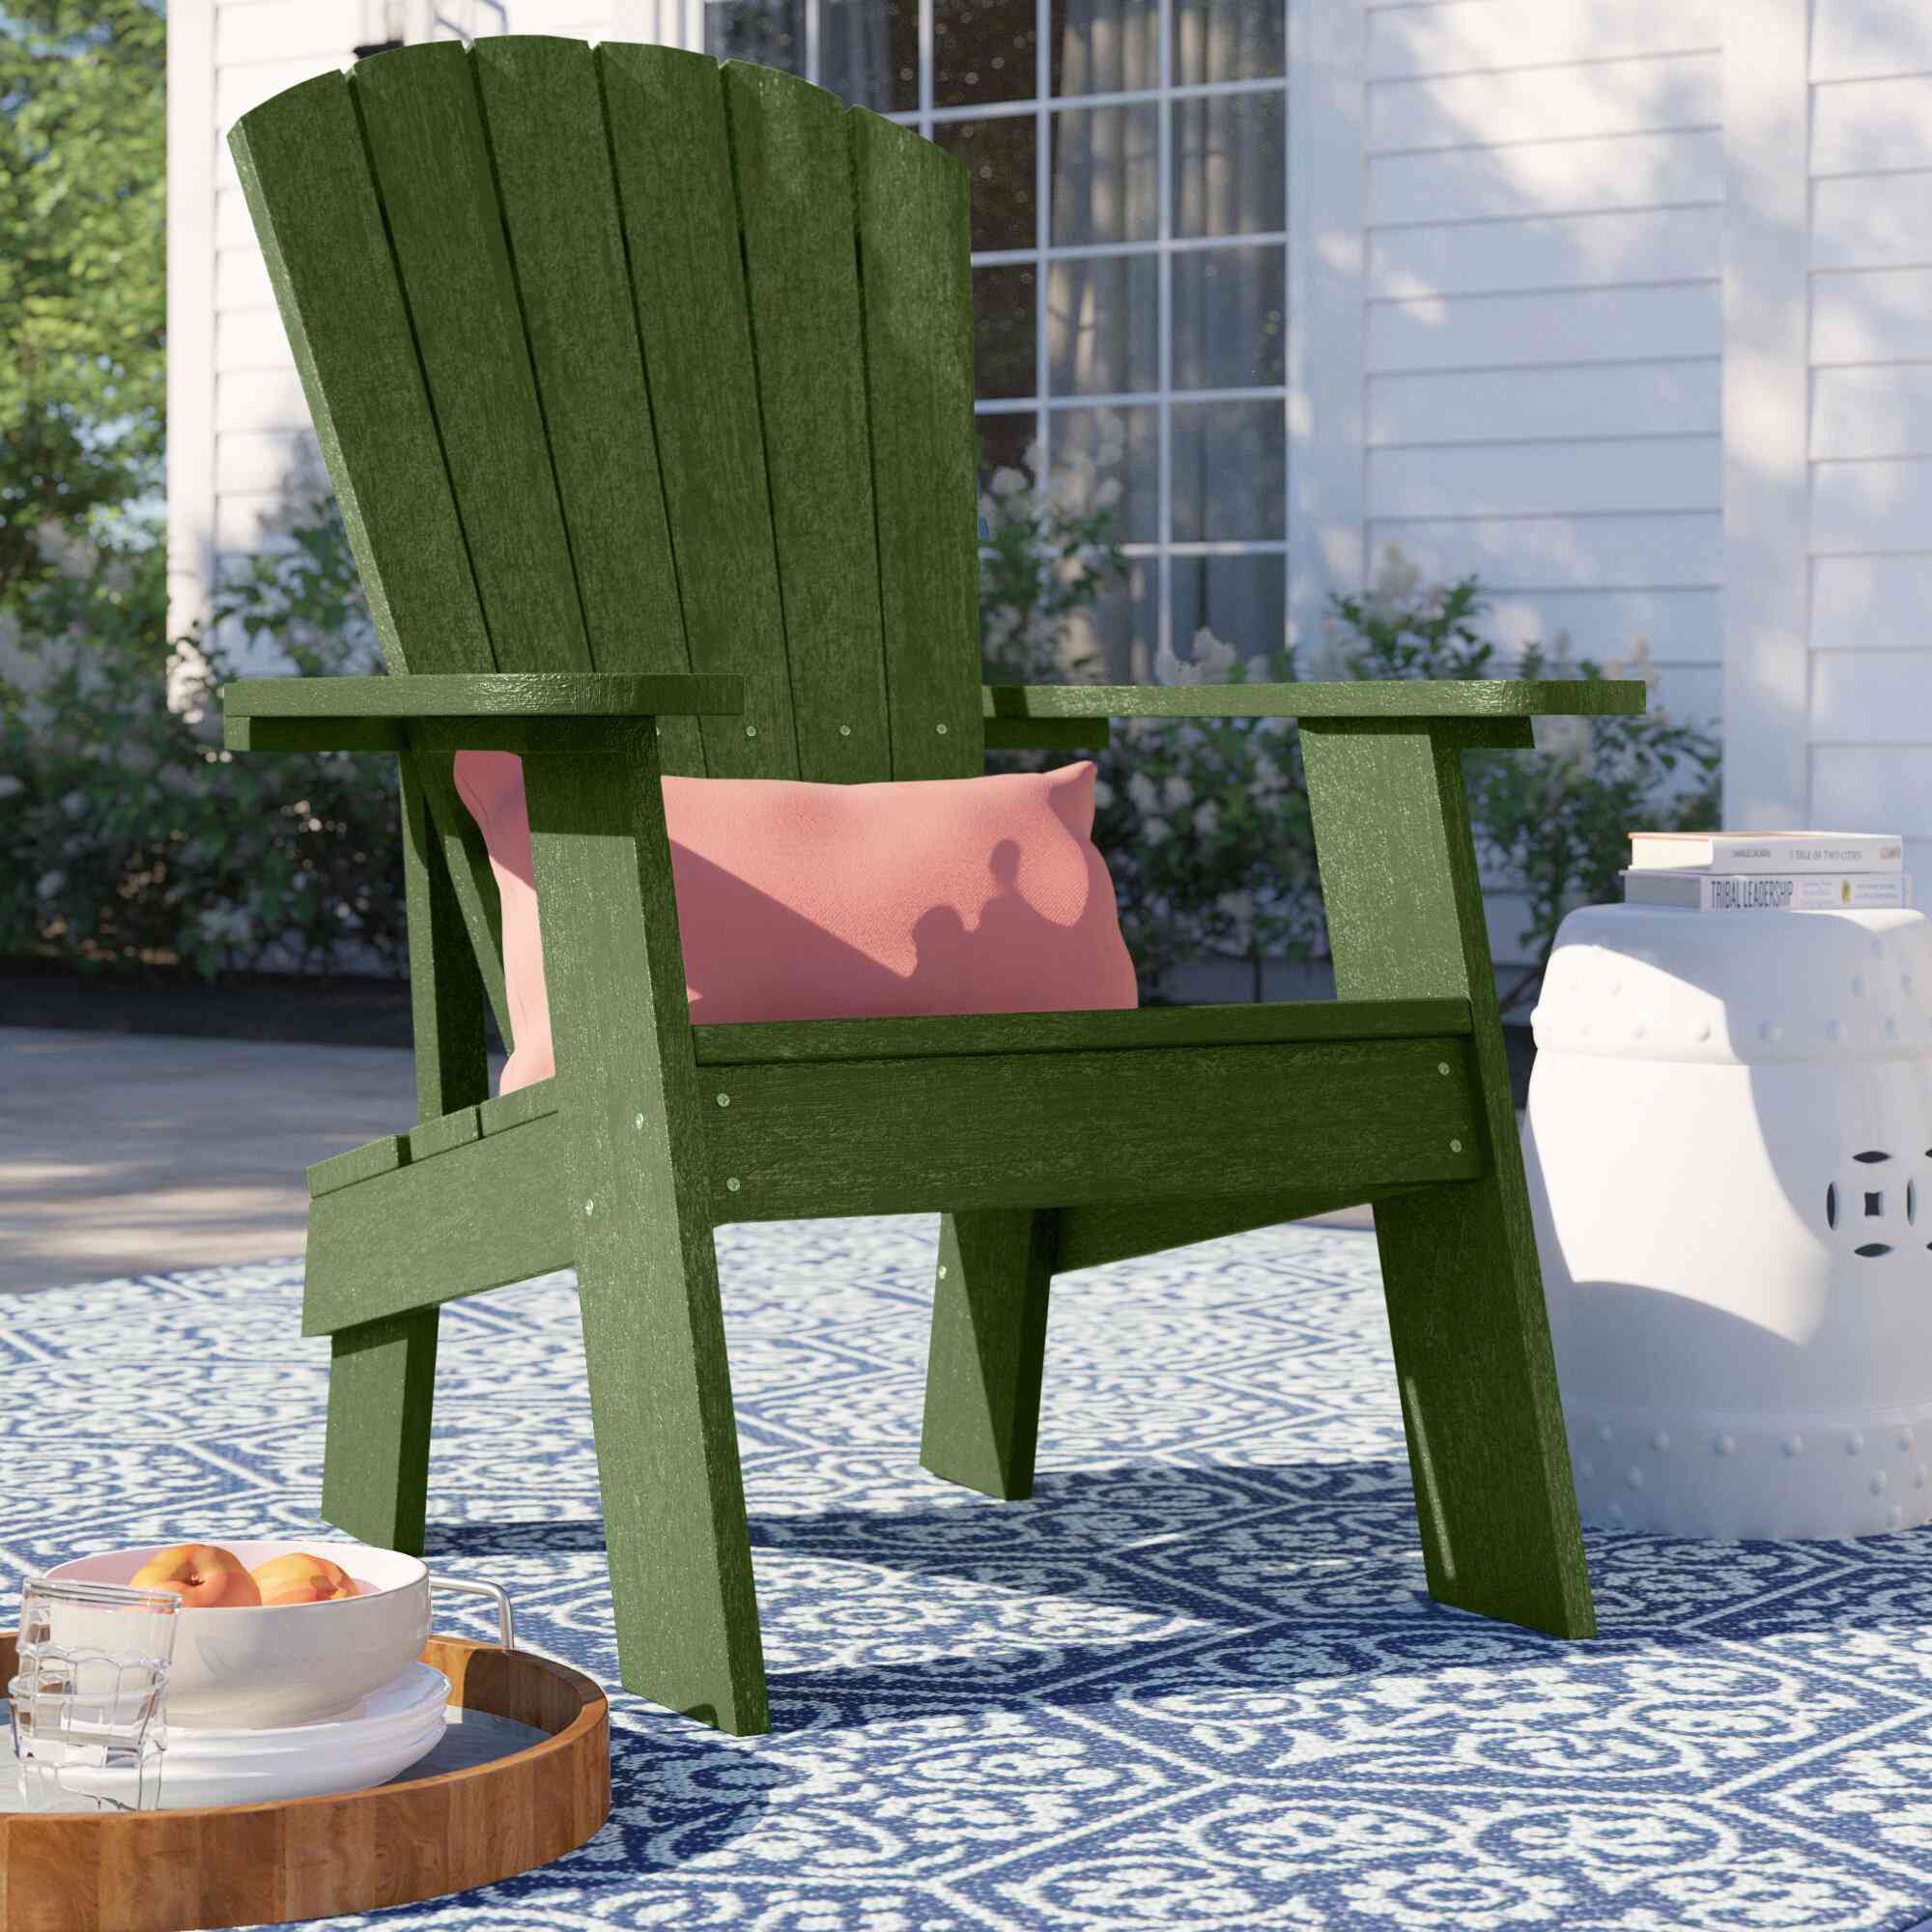 Sol 72户外缟玛瑙科尔沃斯塑料阿迪朗达克椅